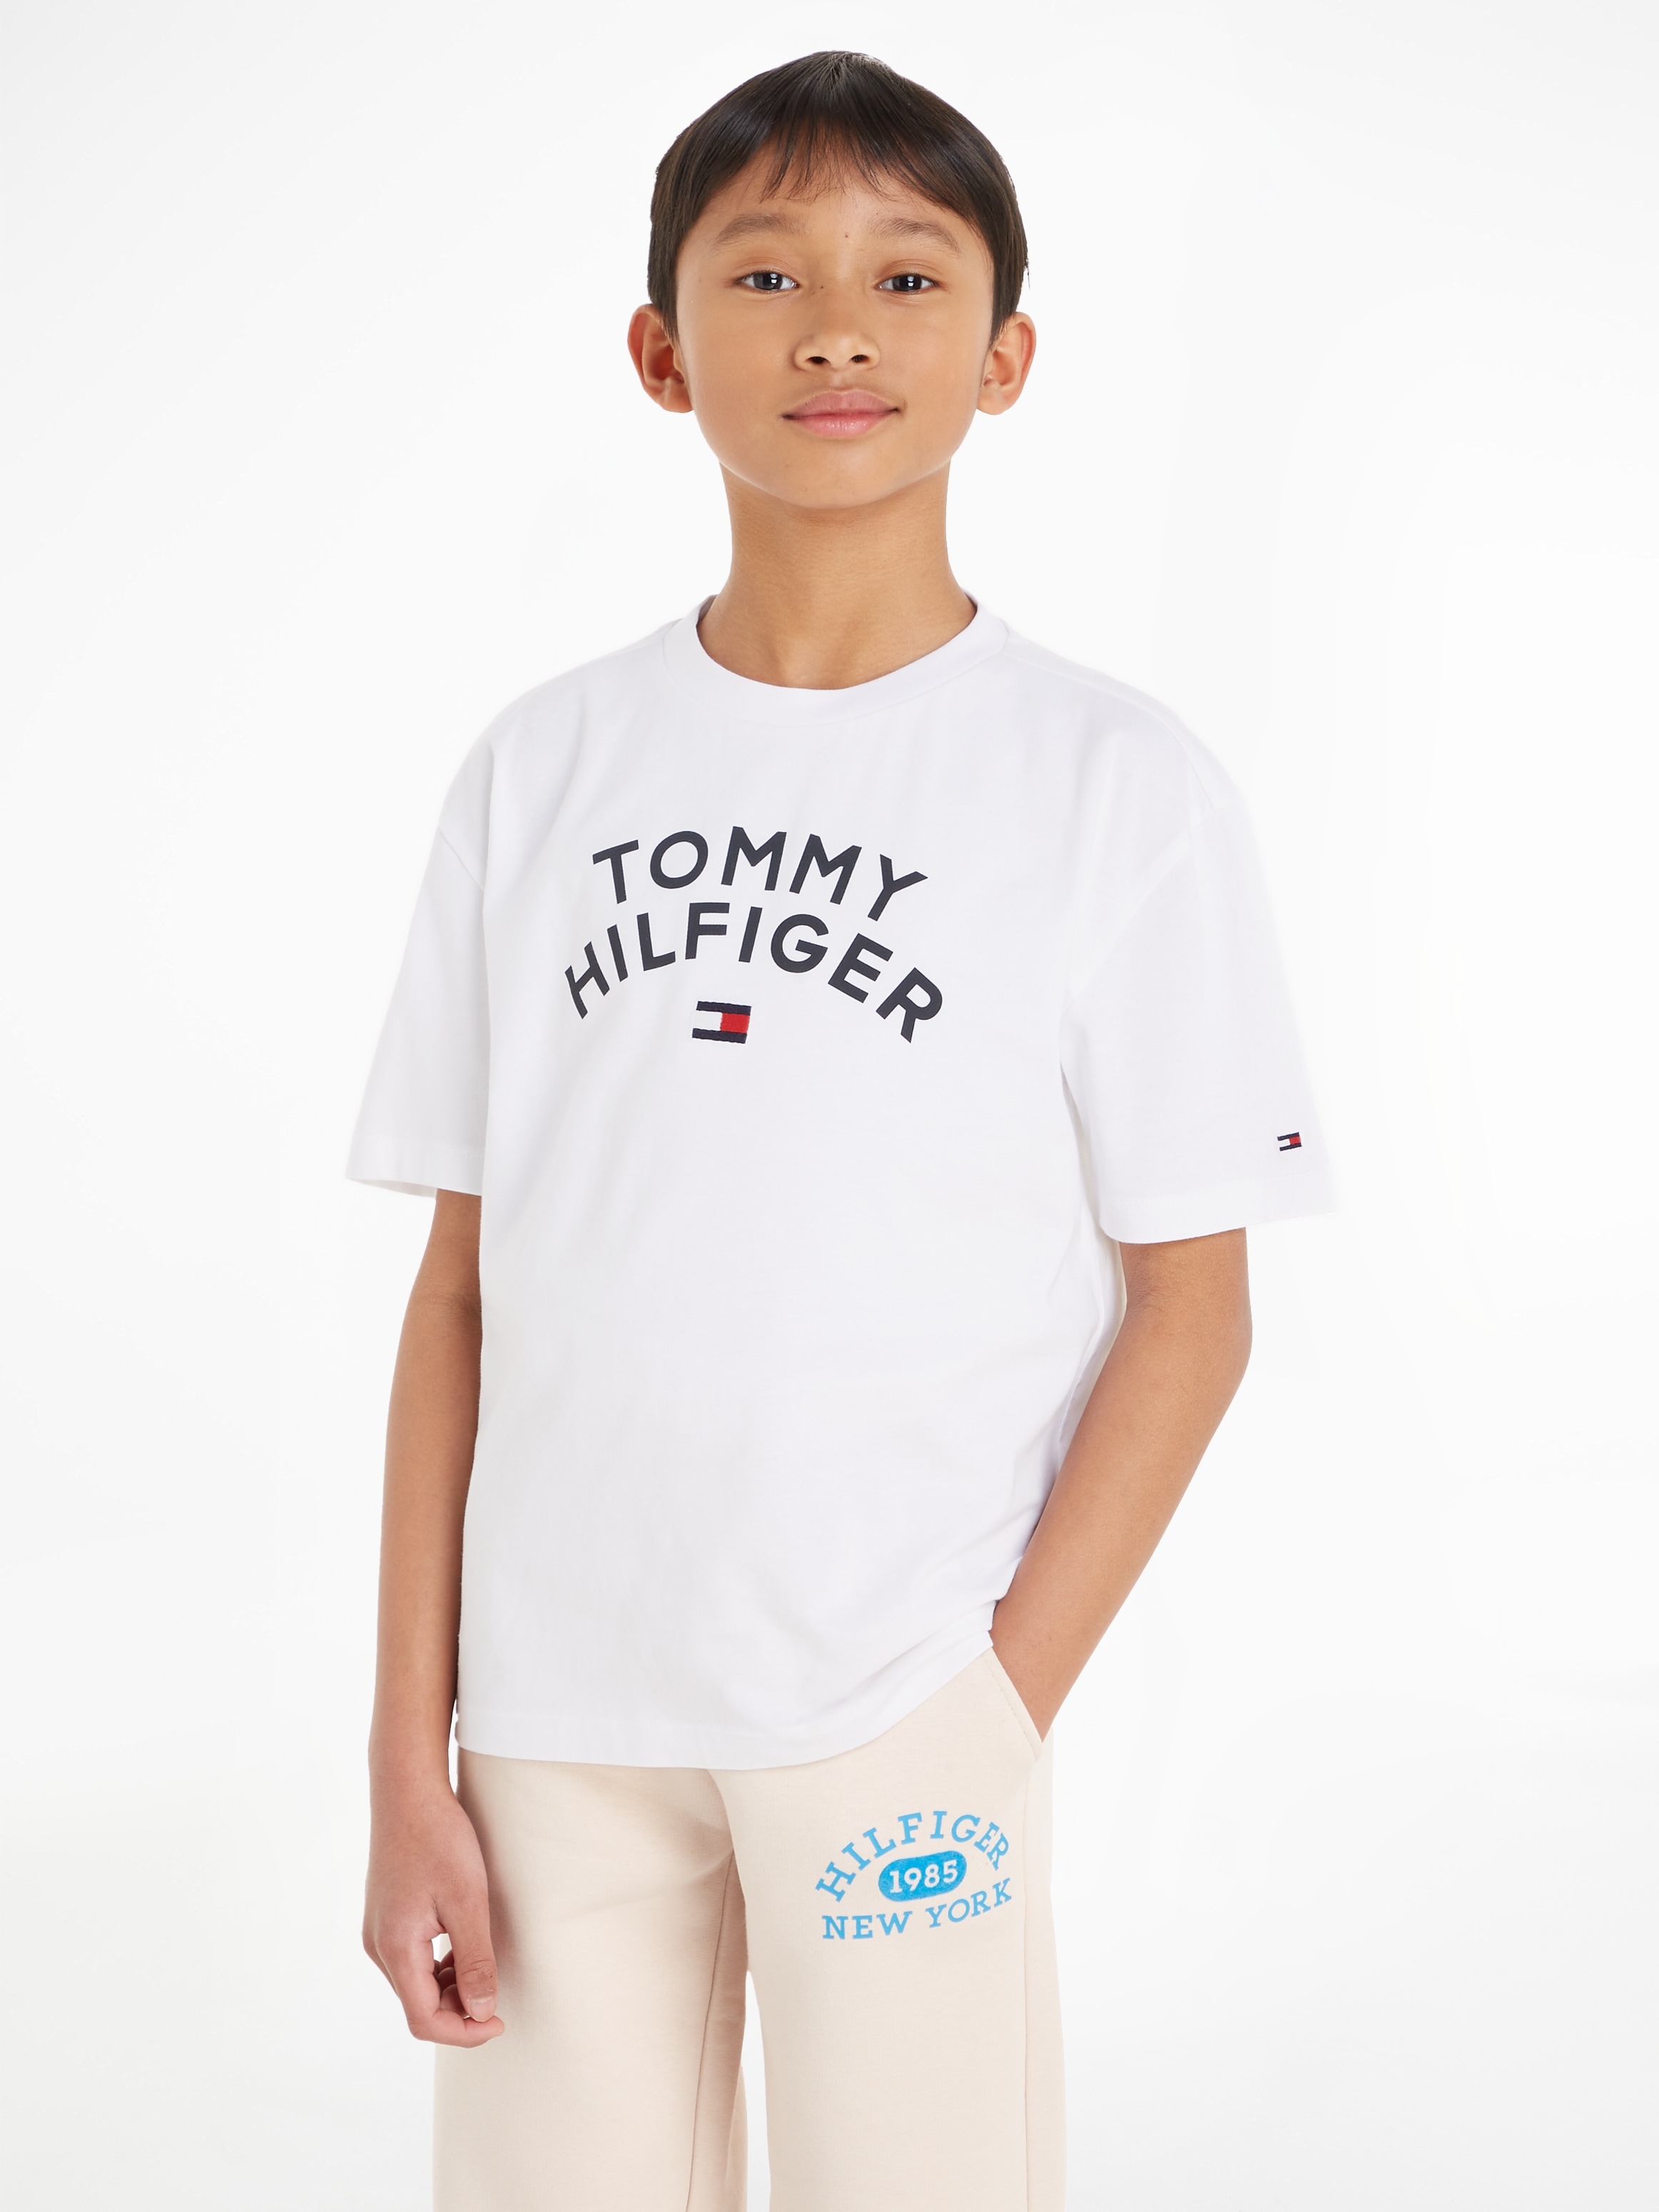 versandkostenfrei »TOMMY Hilfiger HILFIGER shoppen FLAG Tommy Mindestbestellwert T-Shirt ohne - Trendige TEE«